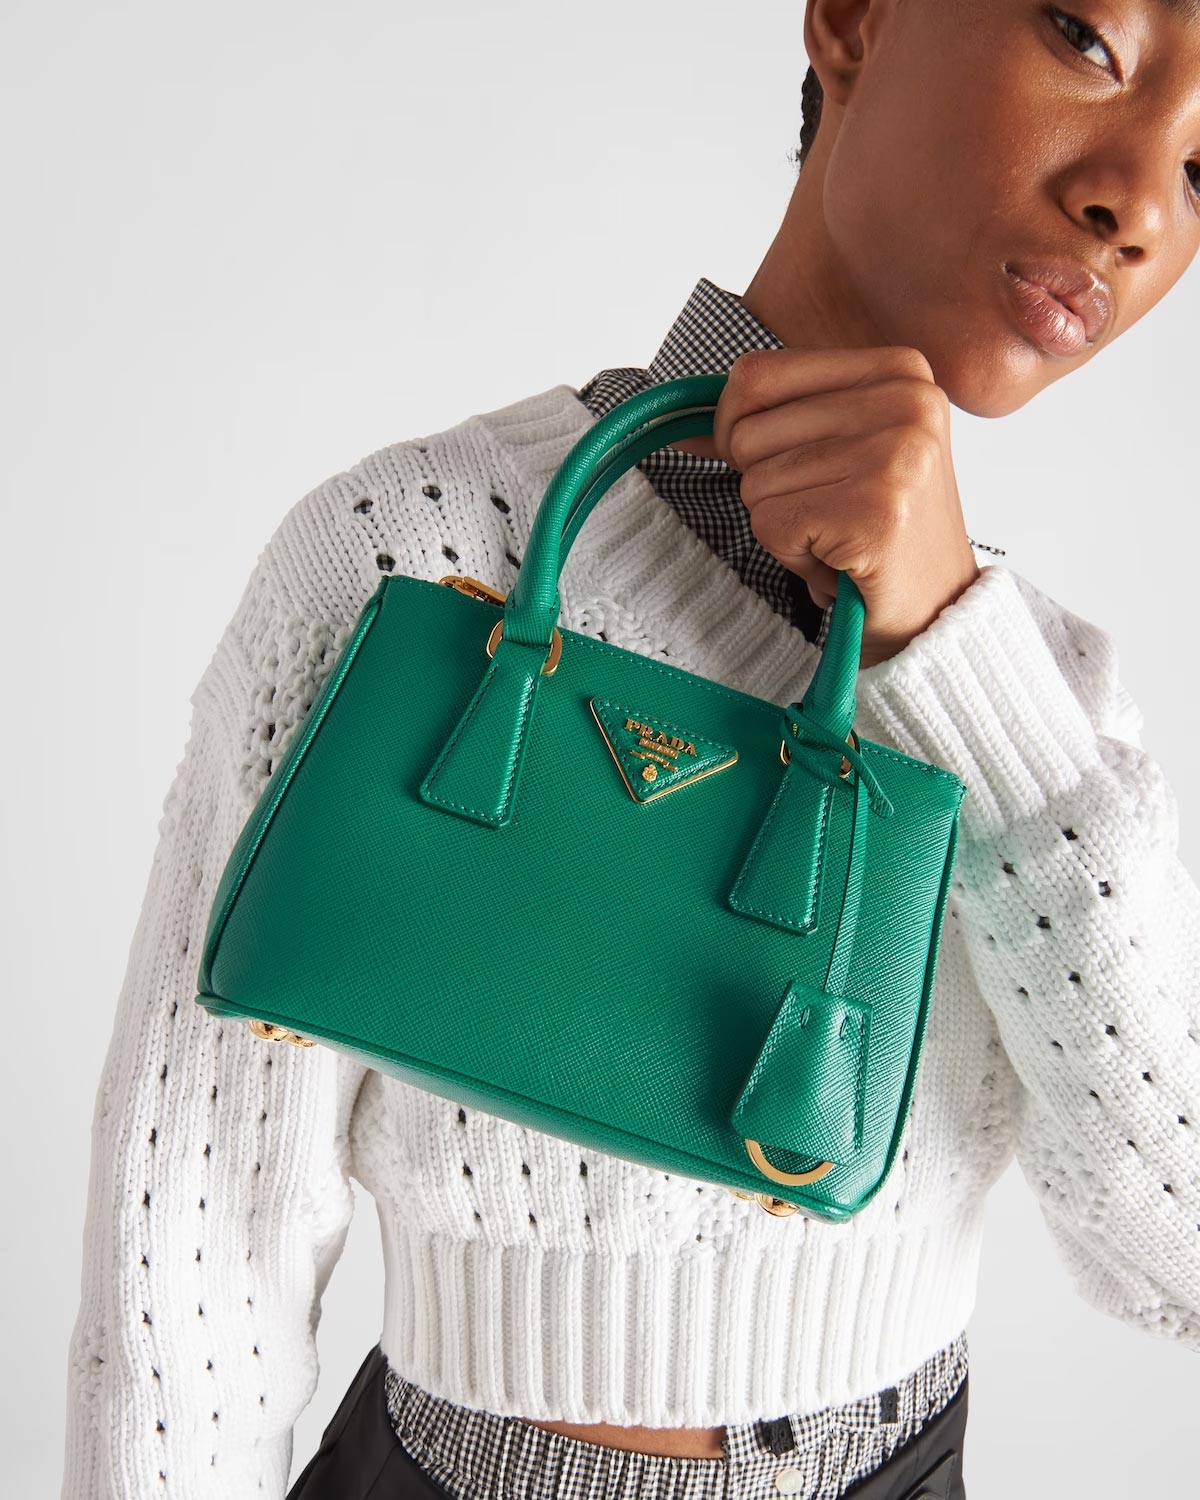 Prada Reinvents Its Iconic Nylon Bag